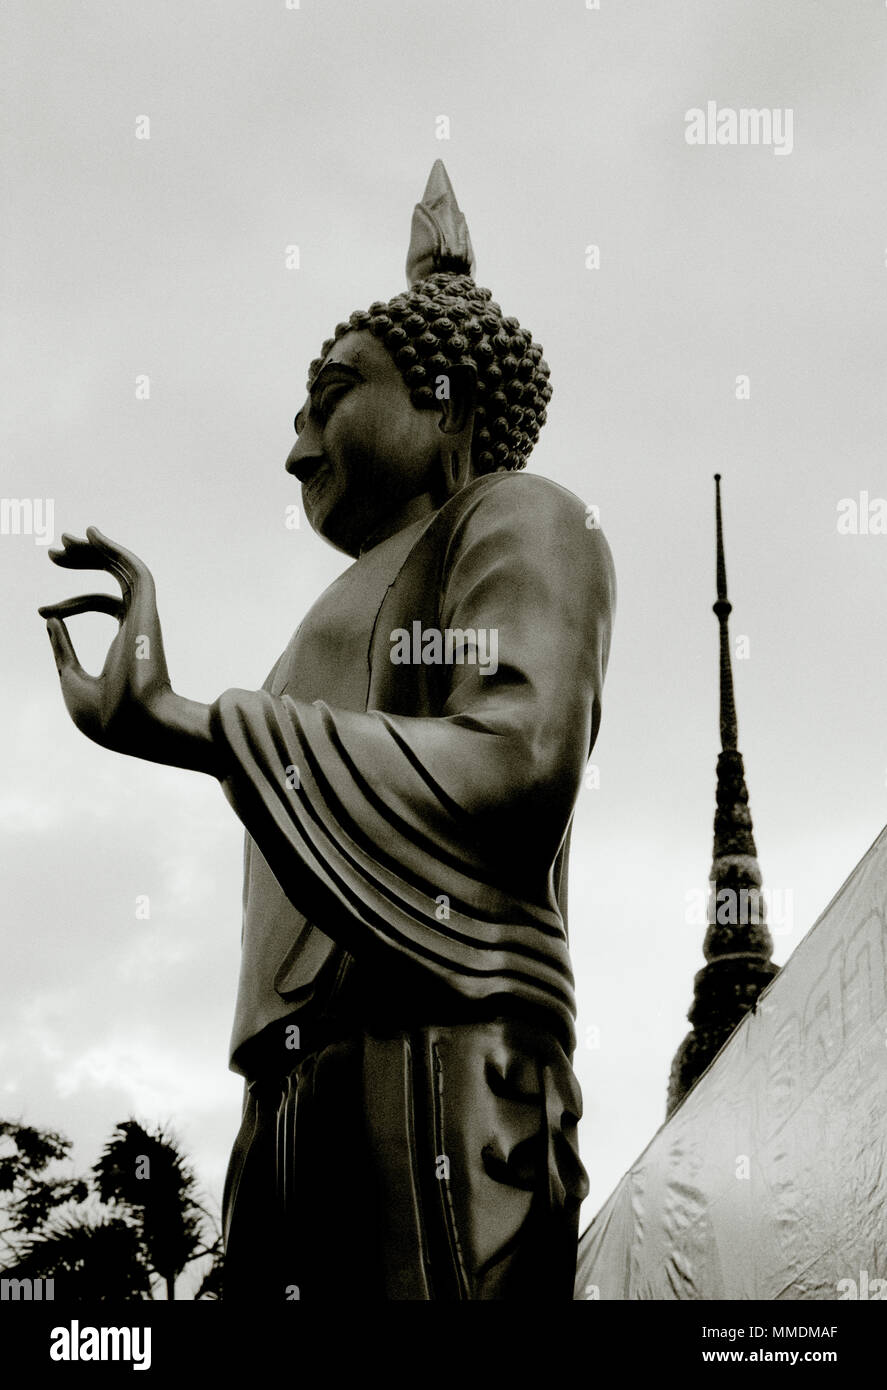 Buda en piedra, colores gris y negro – Almacen Benares – Decoración Asiática